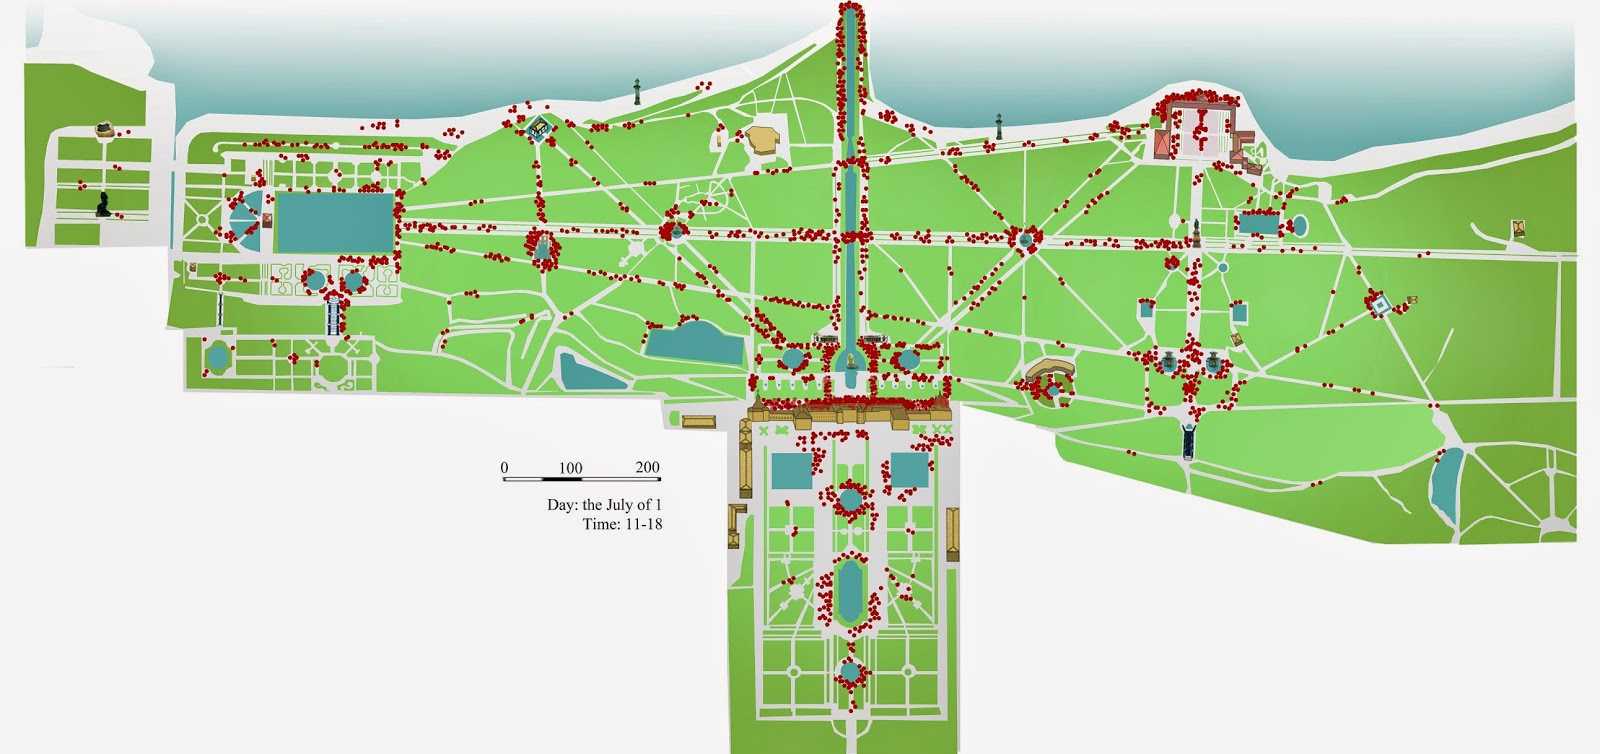 Дворцово-парковый ансамбль петергоф: большой дворец, нижний парк и верхний сад